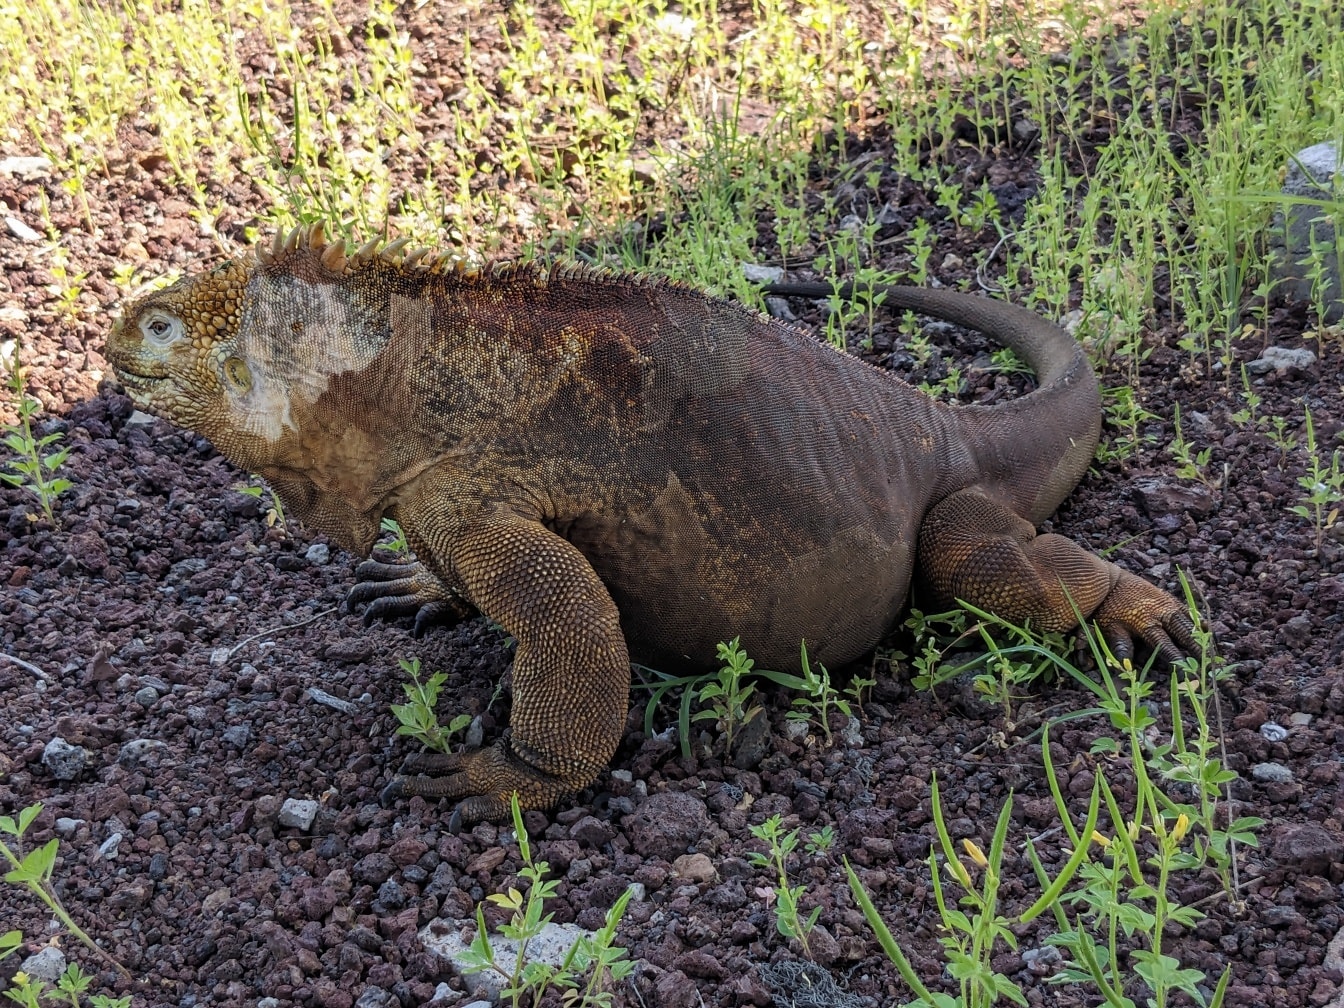 La iguana de Galápagos, una especie de lagarto muy grande (Conolophus subcristatus)